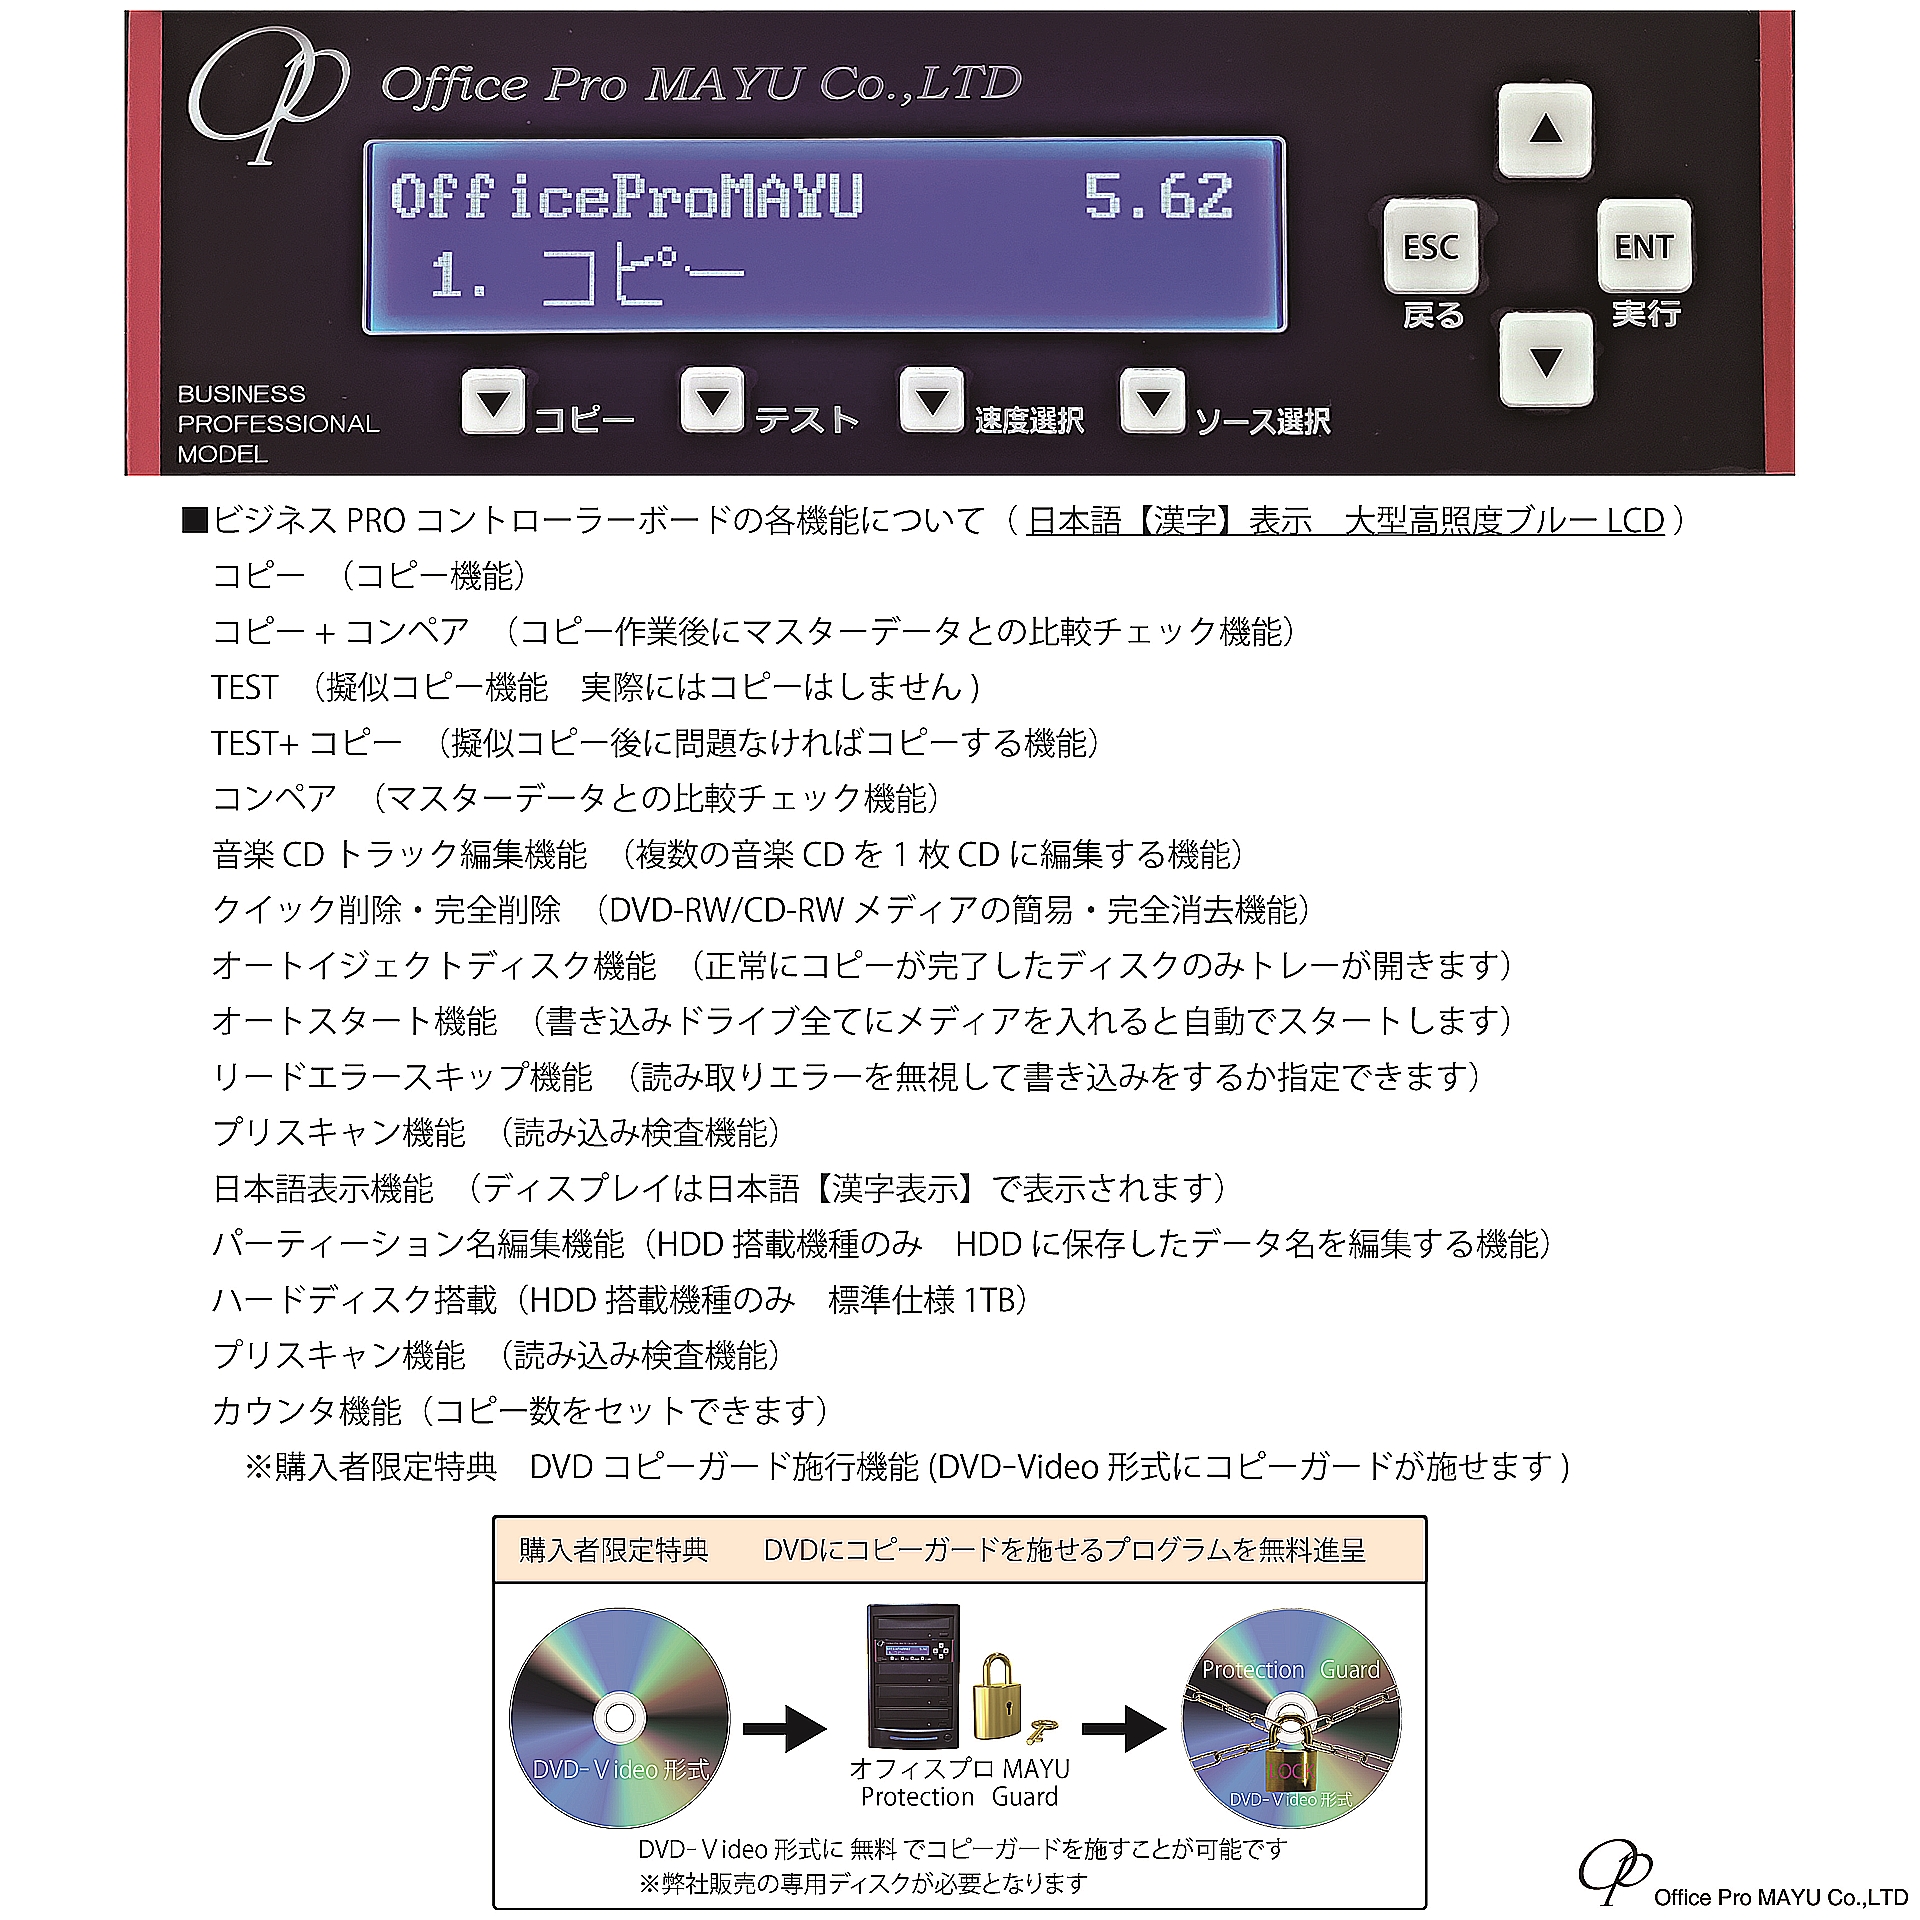  высокого уровня модель HDD установка 1:5 DVD дупликатор бизнес PRO Hitachi LG производства Drive 